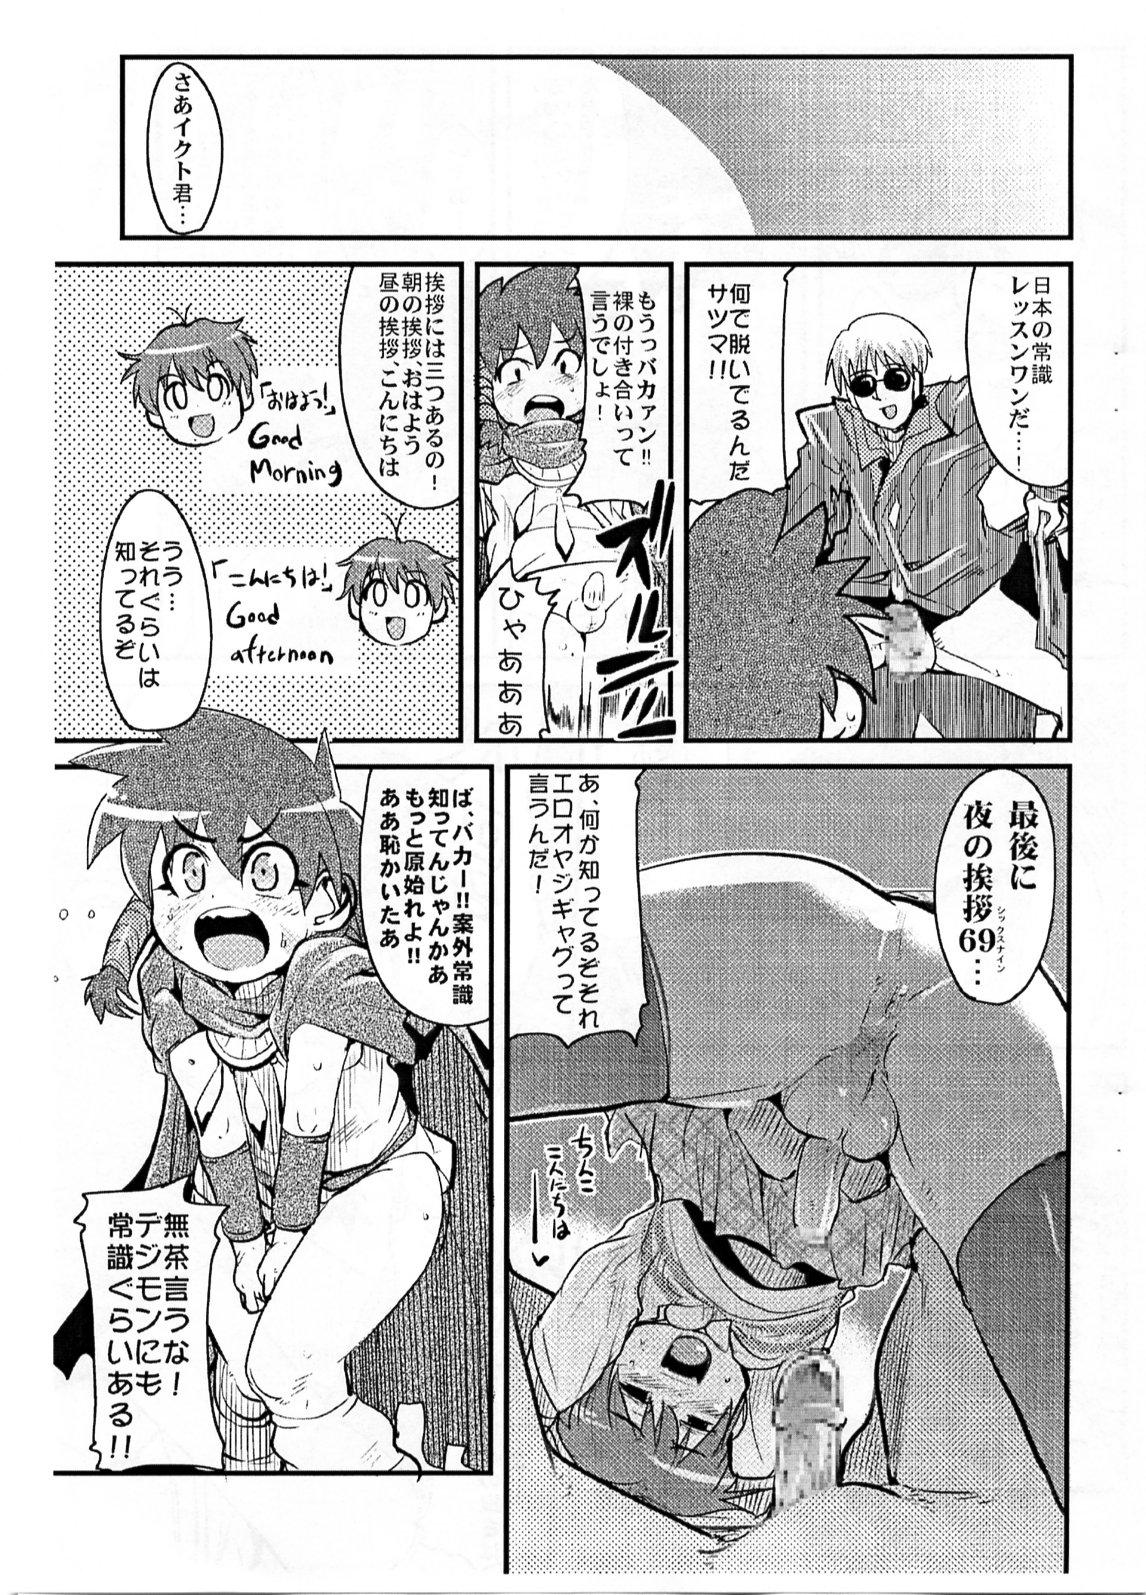 Hotfuck Yaseiji ni iroiro oshieru hon nano da - Digimon savers Paja - Page 4